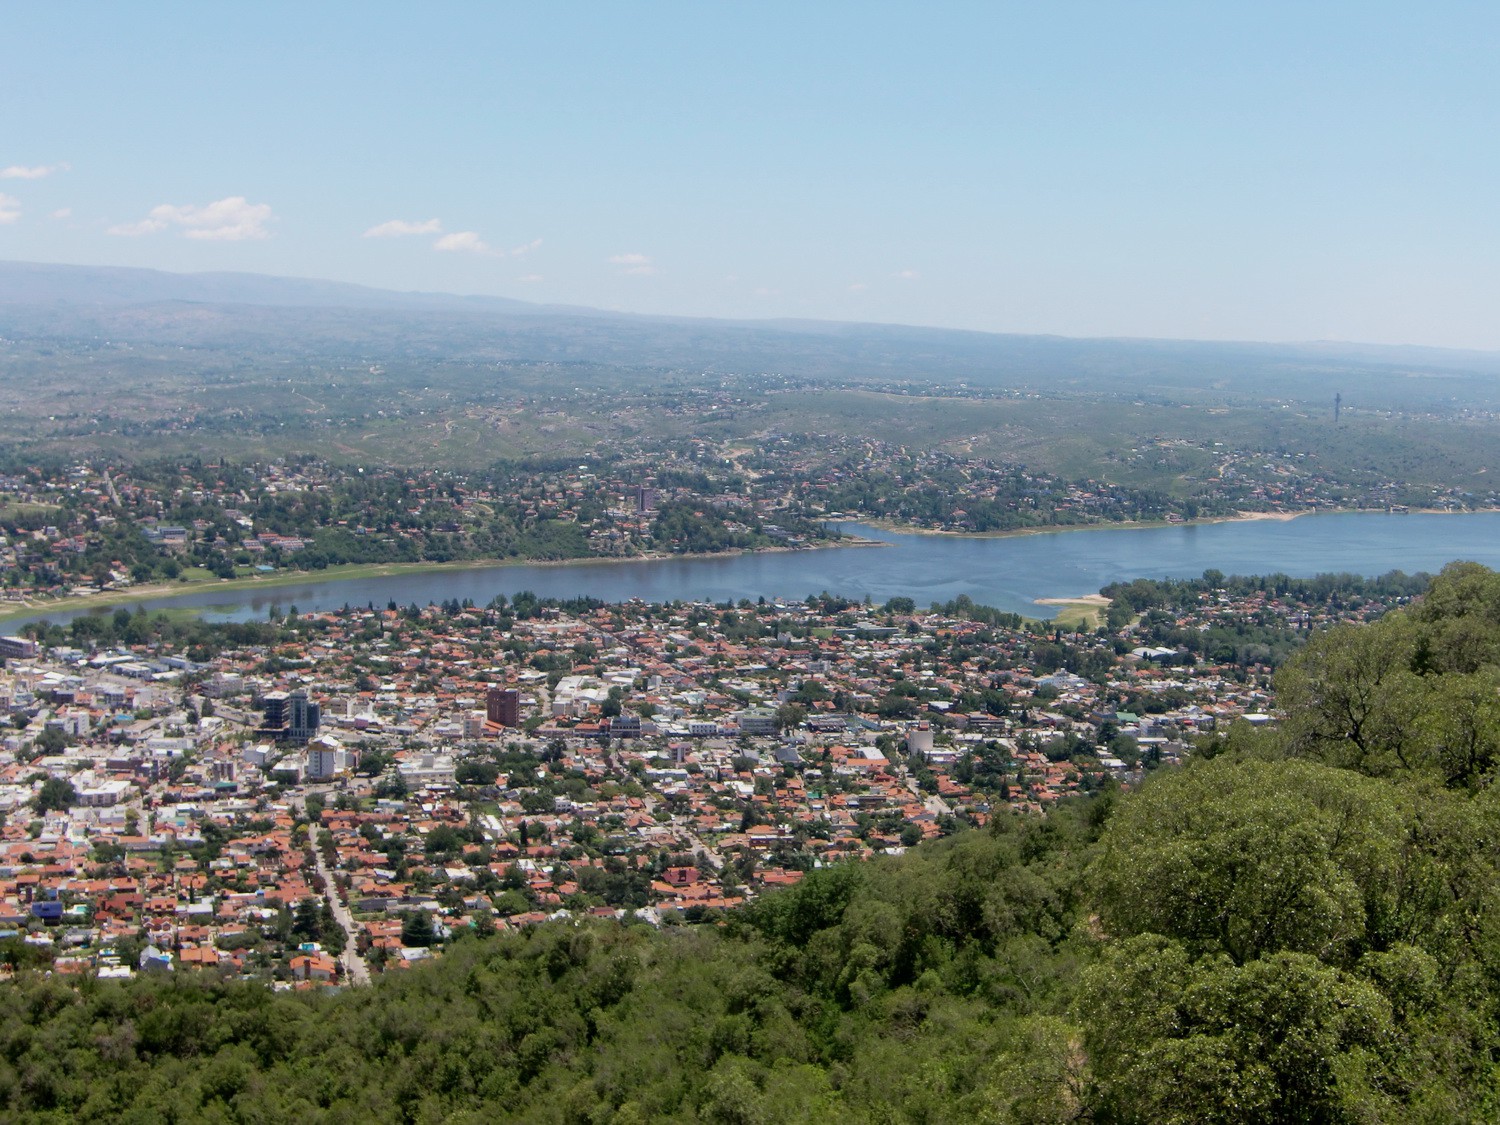 View to Villa Carlos Paz from Cerro La Cruz